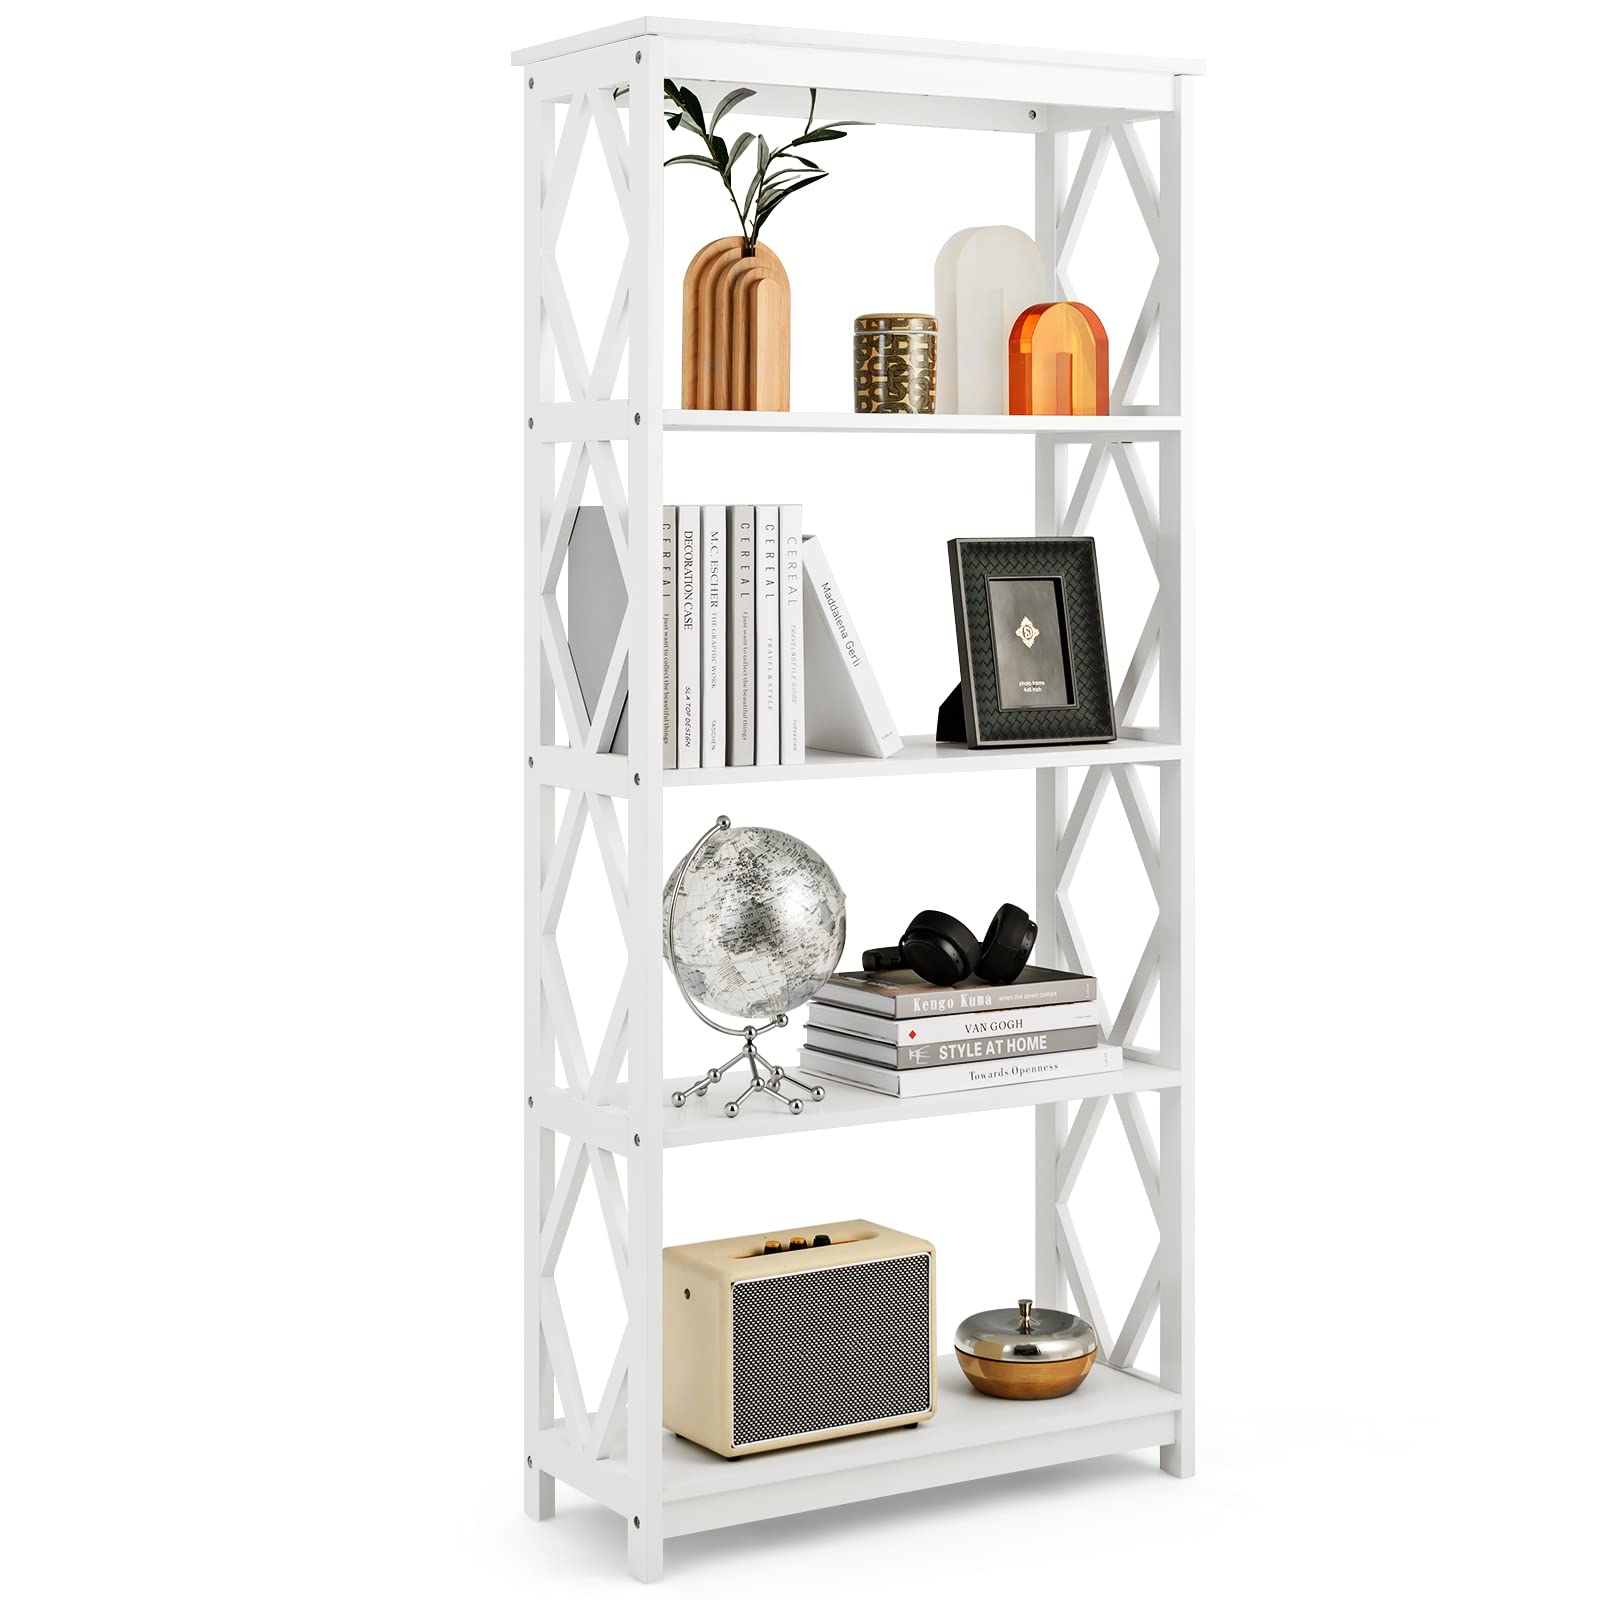 Giantex 5-Tier 61" Tall Wooden Bookshelf - Modern Freestanding Open Shelving Storage Display Shelf